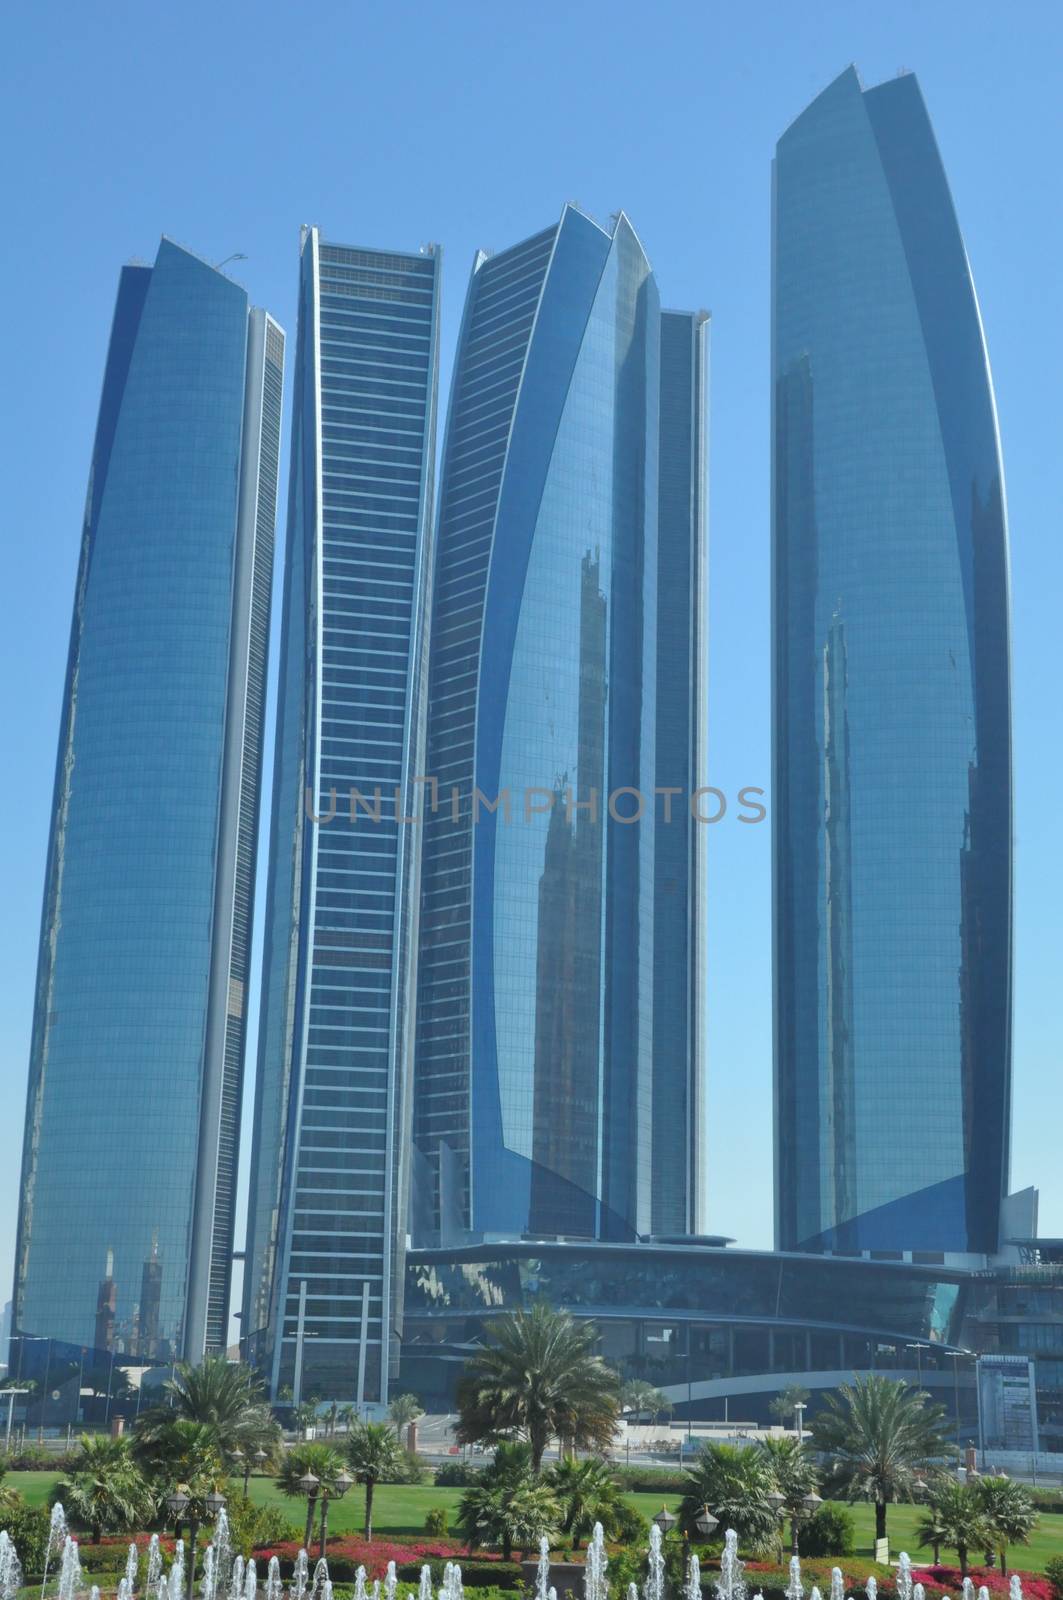 Etihad Towers in Abu Dhabi, UAE by sainaniritu